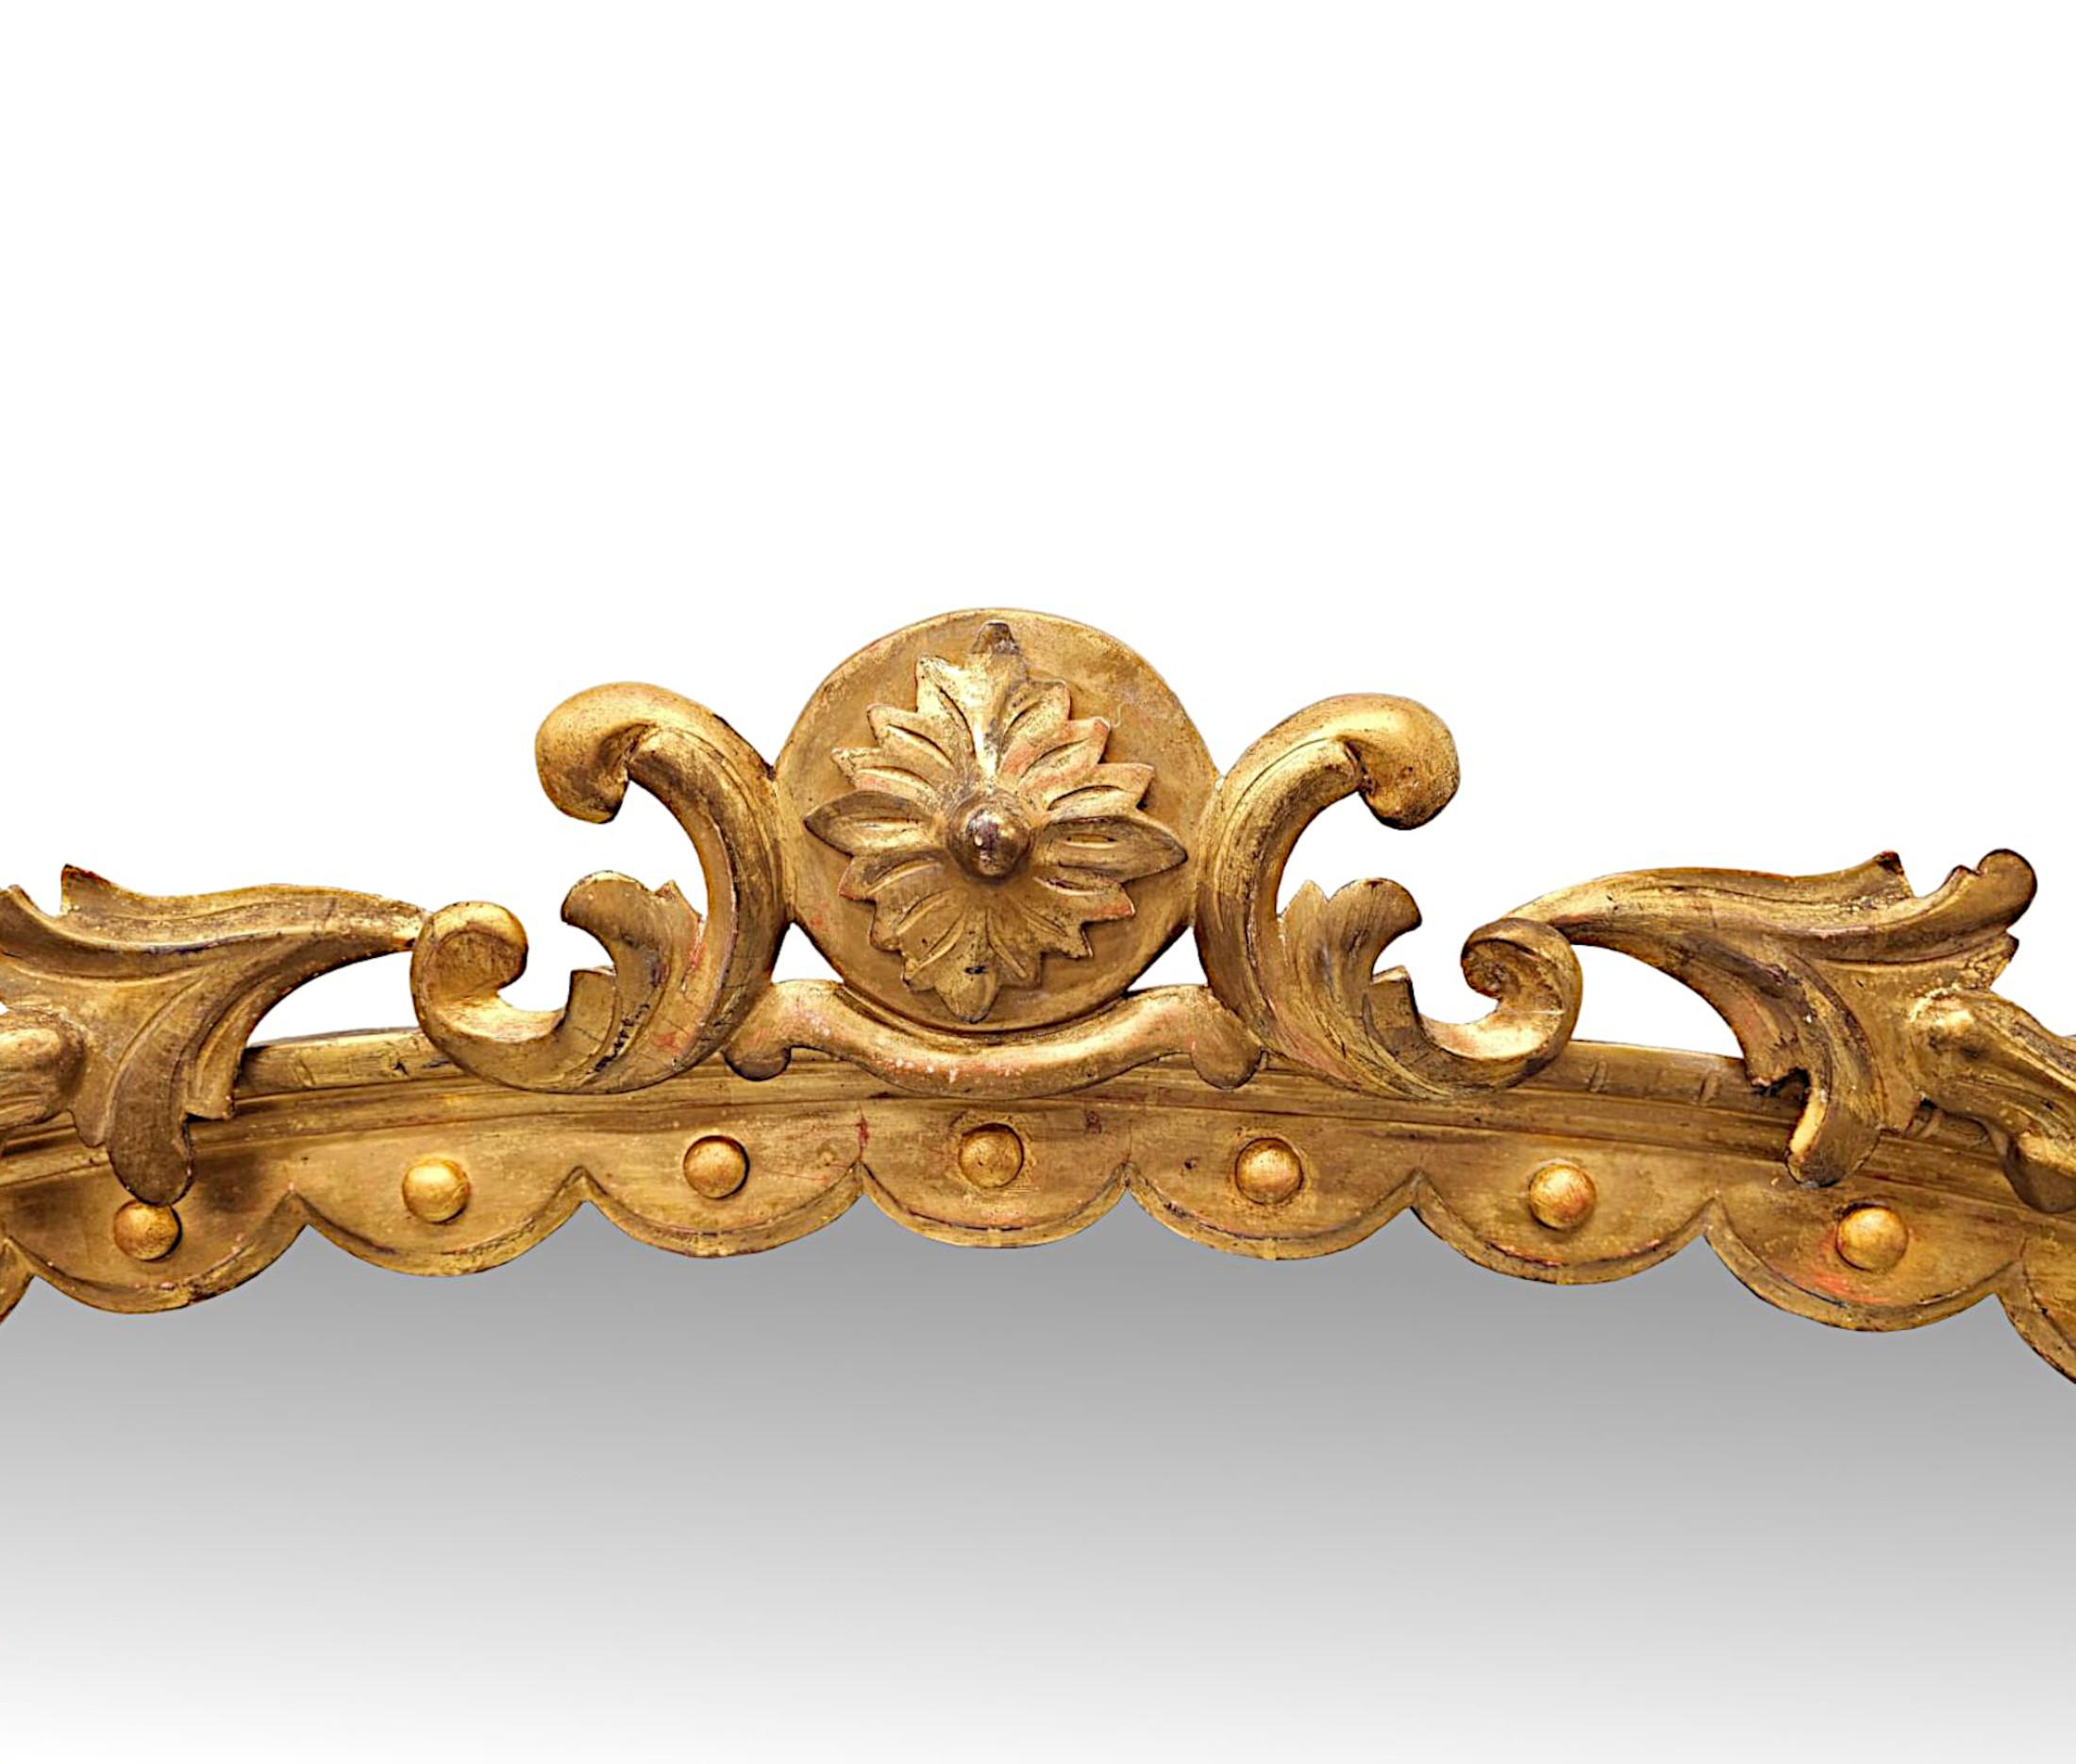 Eine fabelhafte 19. Jahrhundert Vergoldung overmantel Spiegel, fein von Hand geschnitzt und von außergewöhnlicher Qualität.  Die Spiegelglasplatte in rechteckiger Form ist in einen beeindruckenden durchbrochenen, geformten und geriffelten Rahmen aus